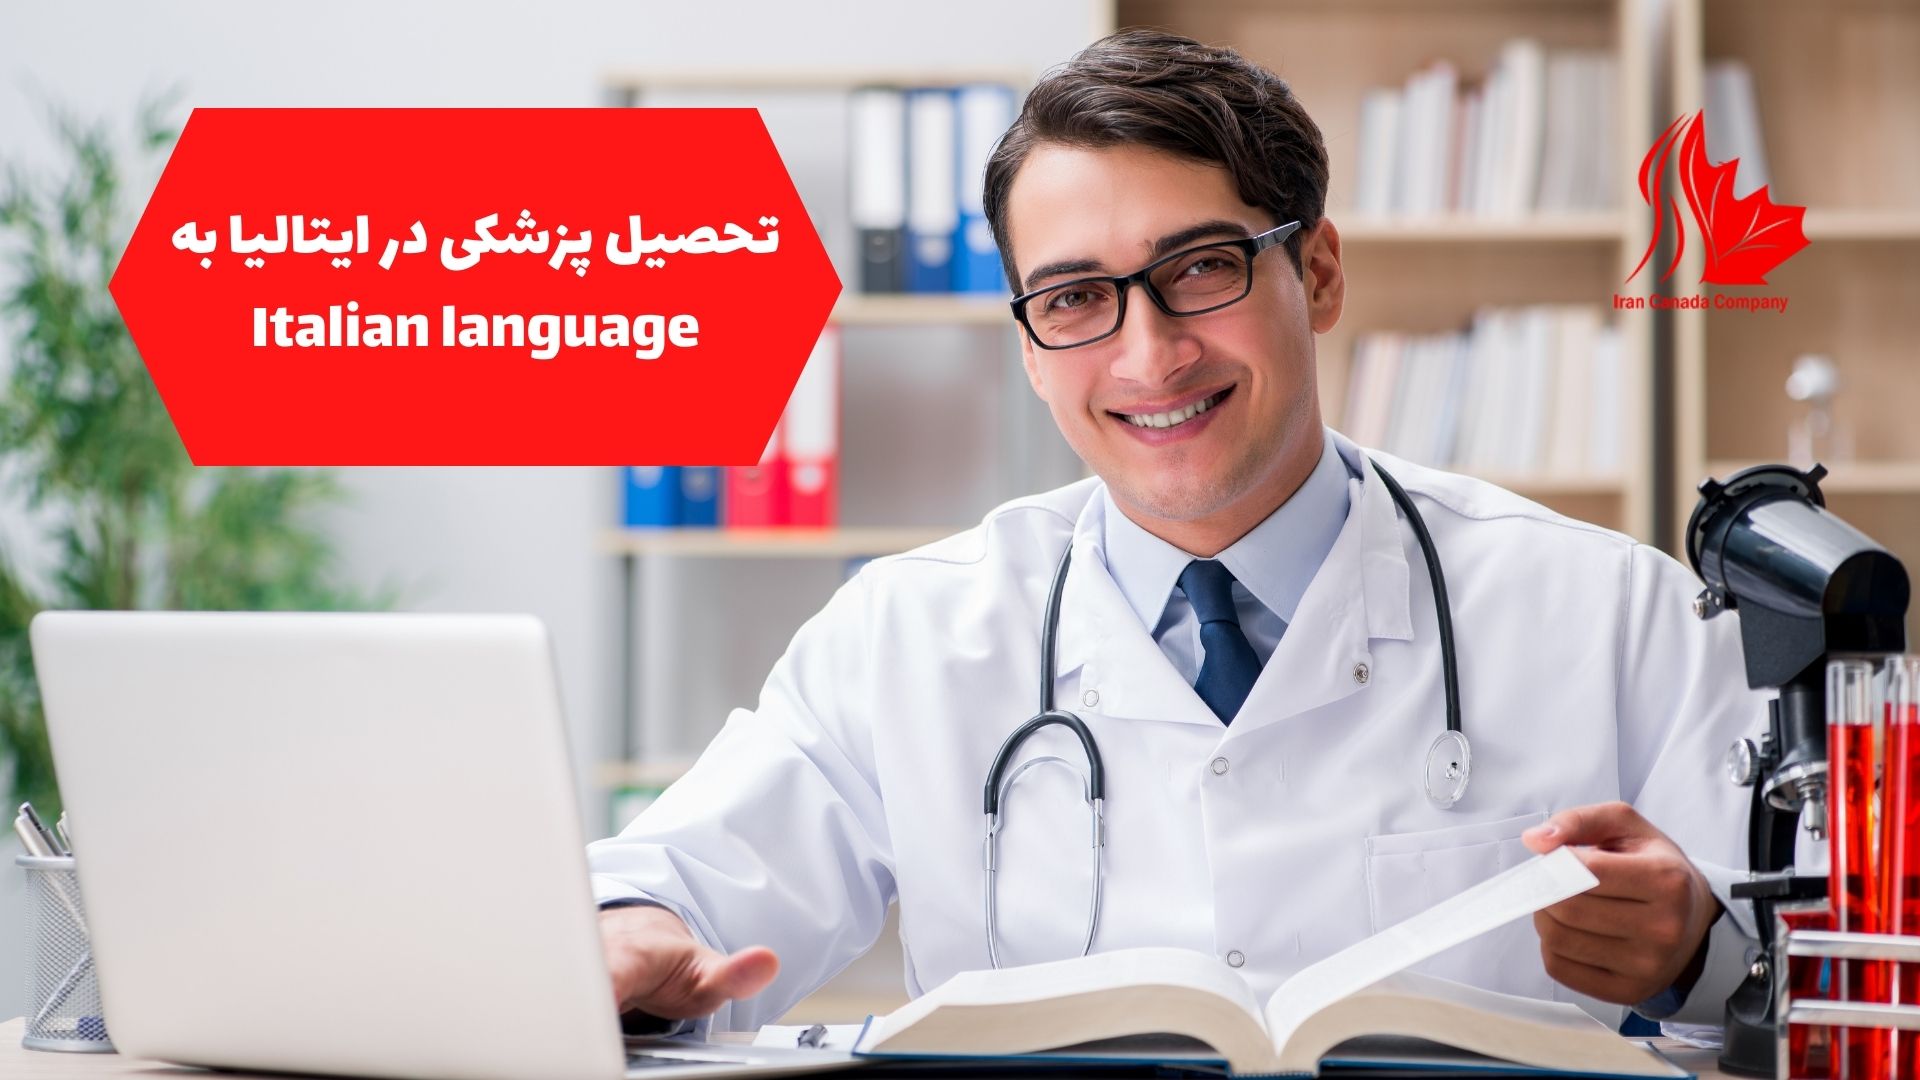 تحصیل پزشکی در ایتالیا به Italian language